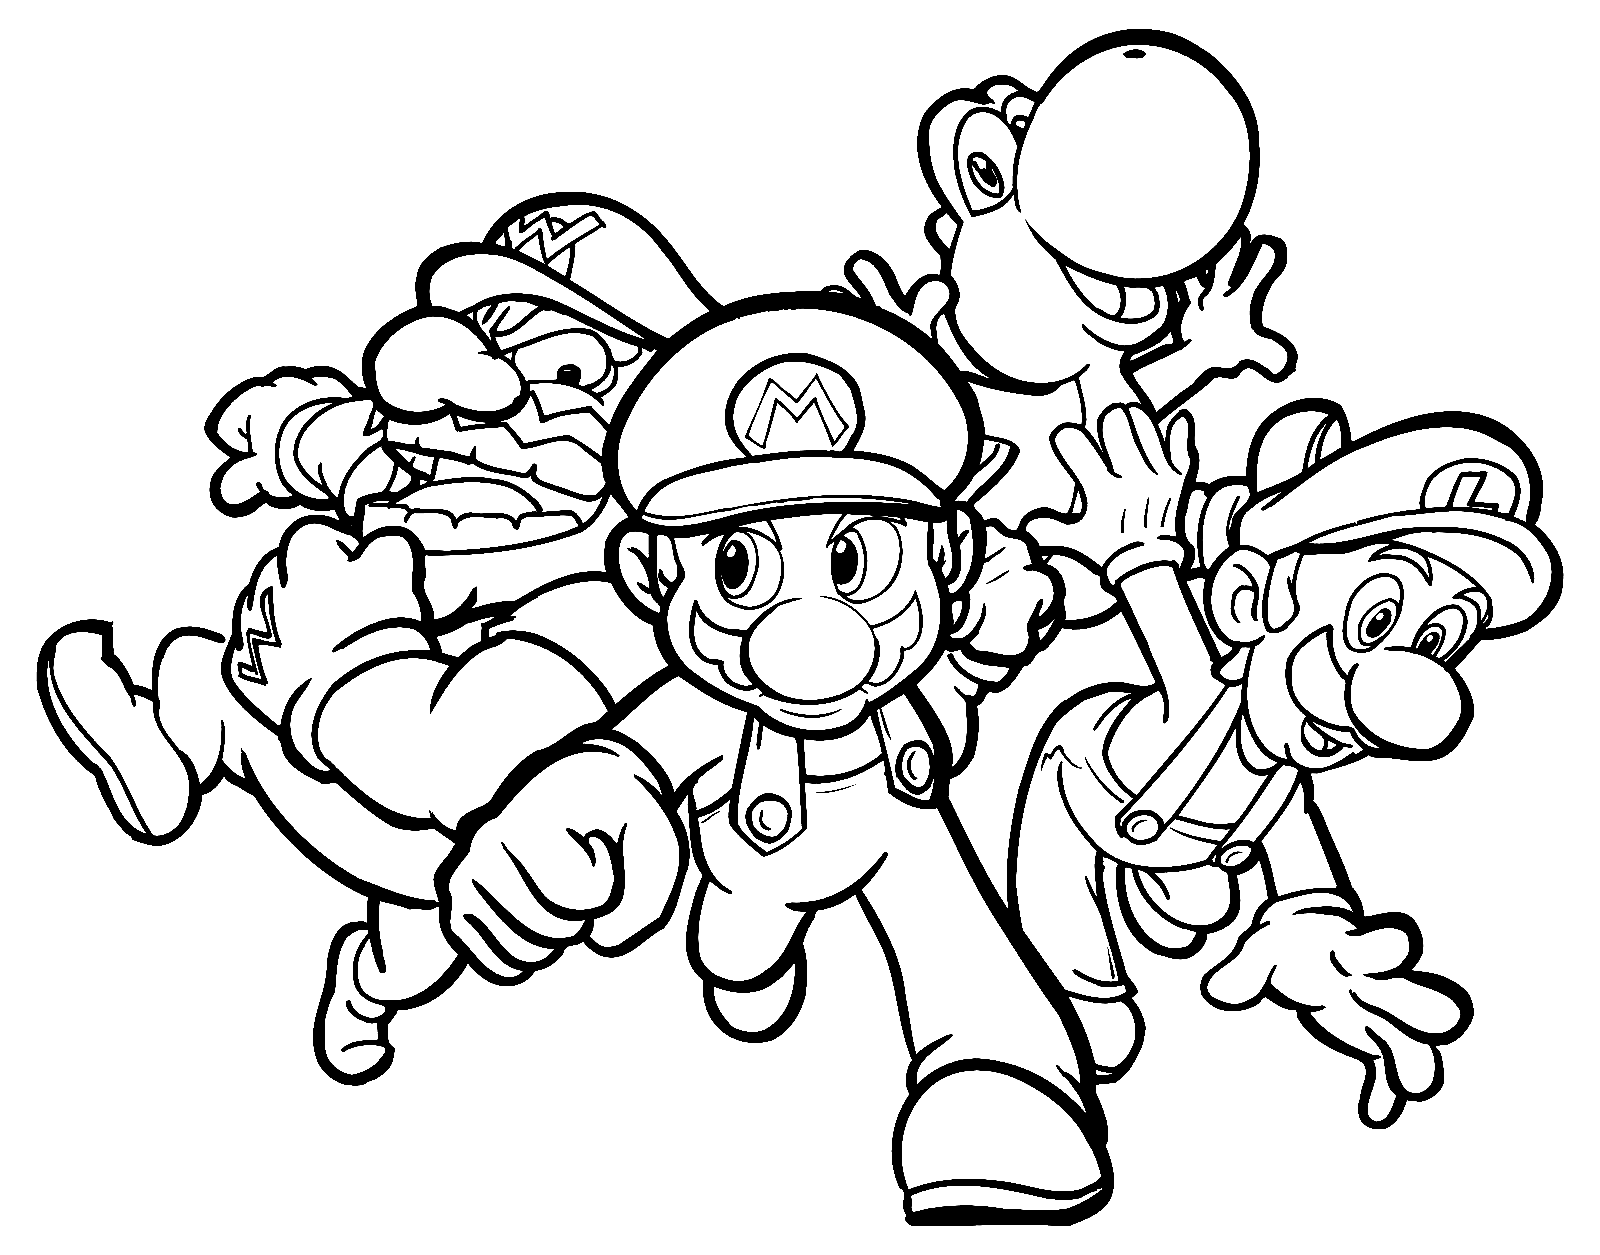 Équipe Mario Party de Mario